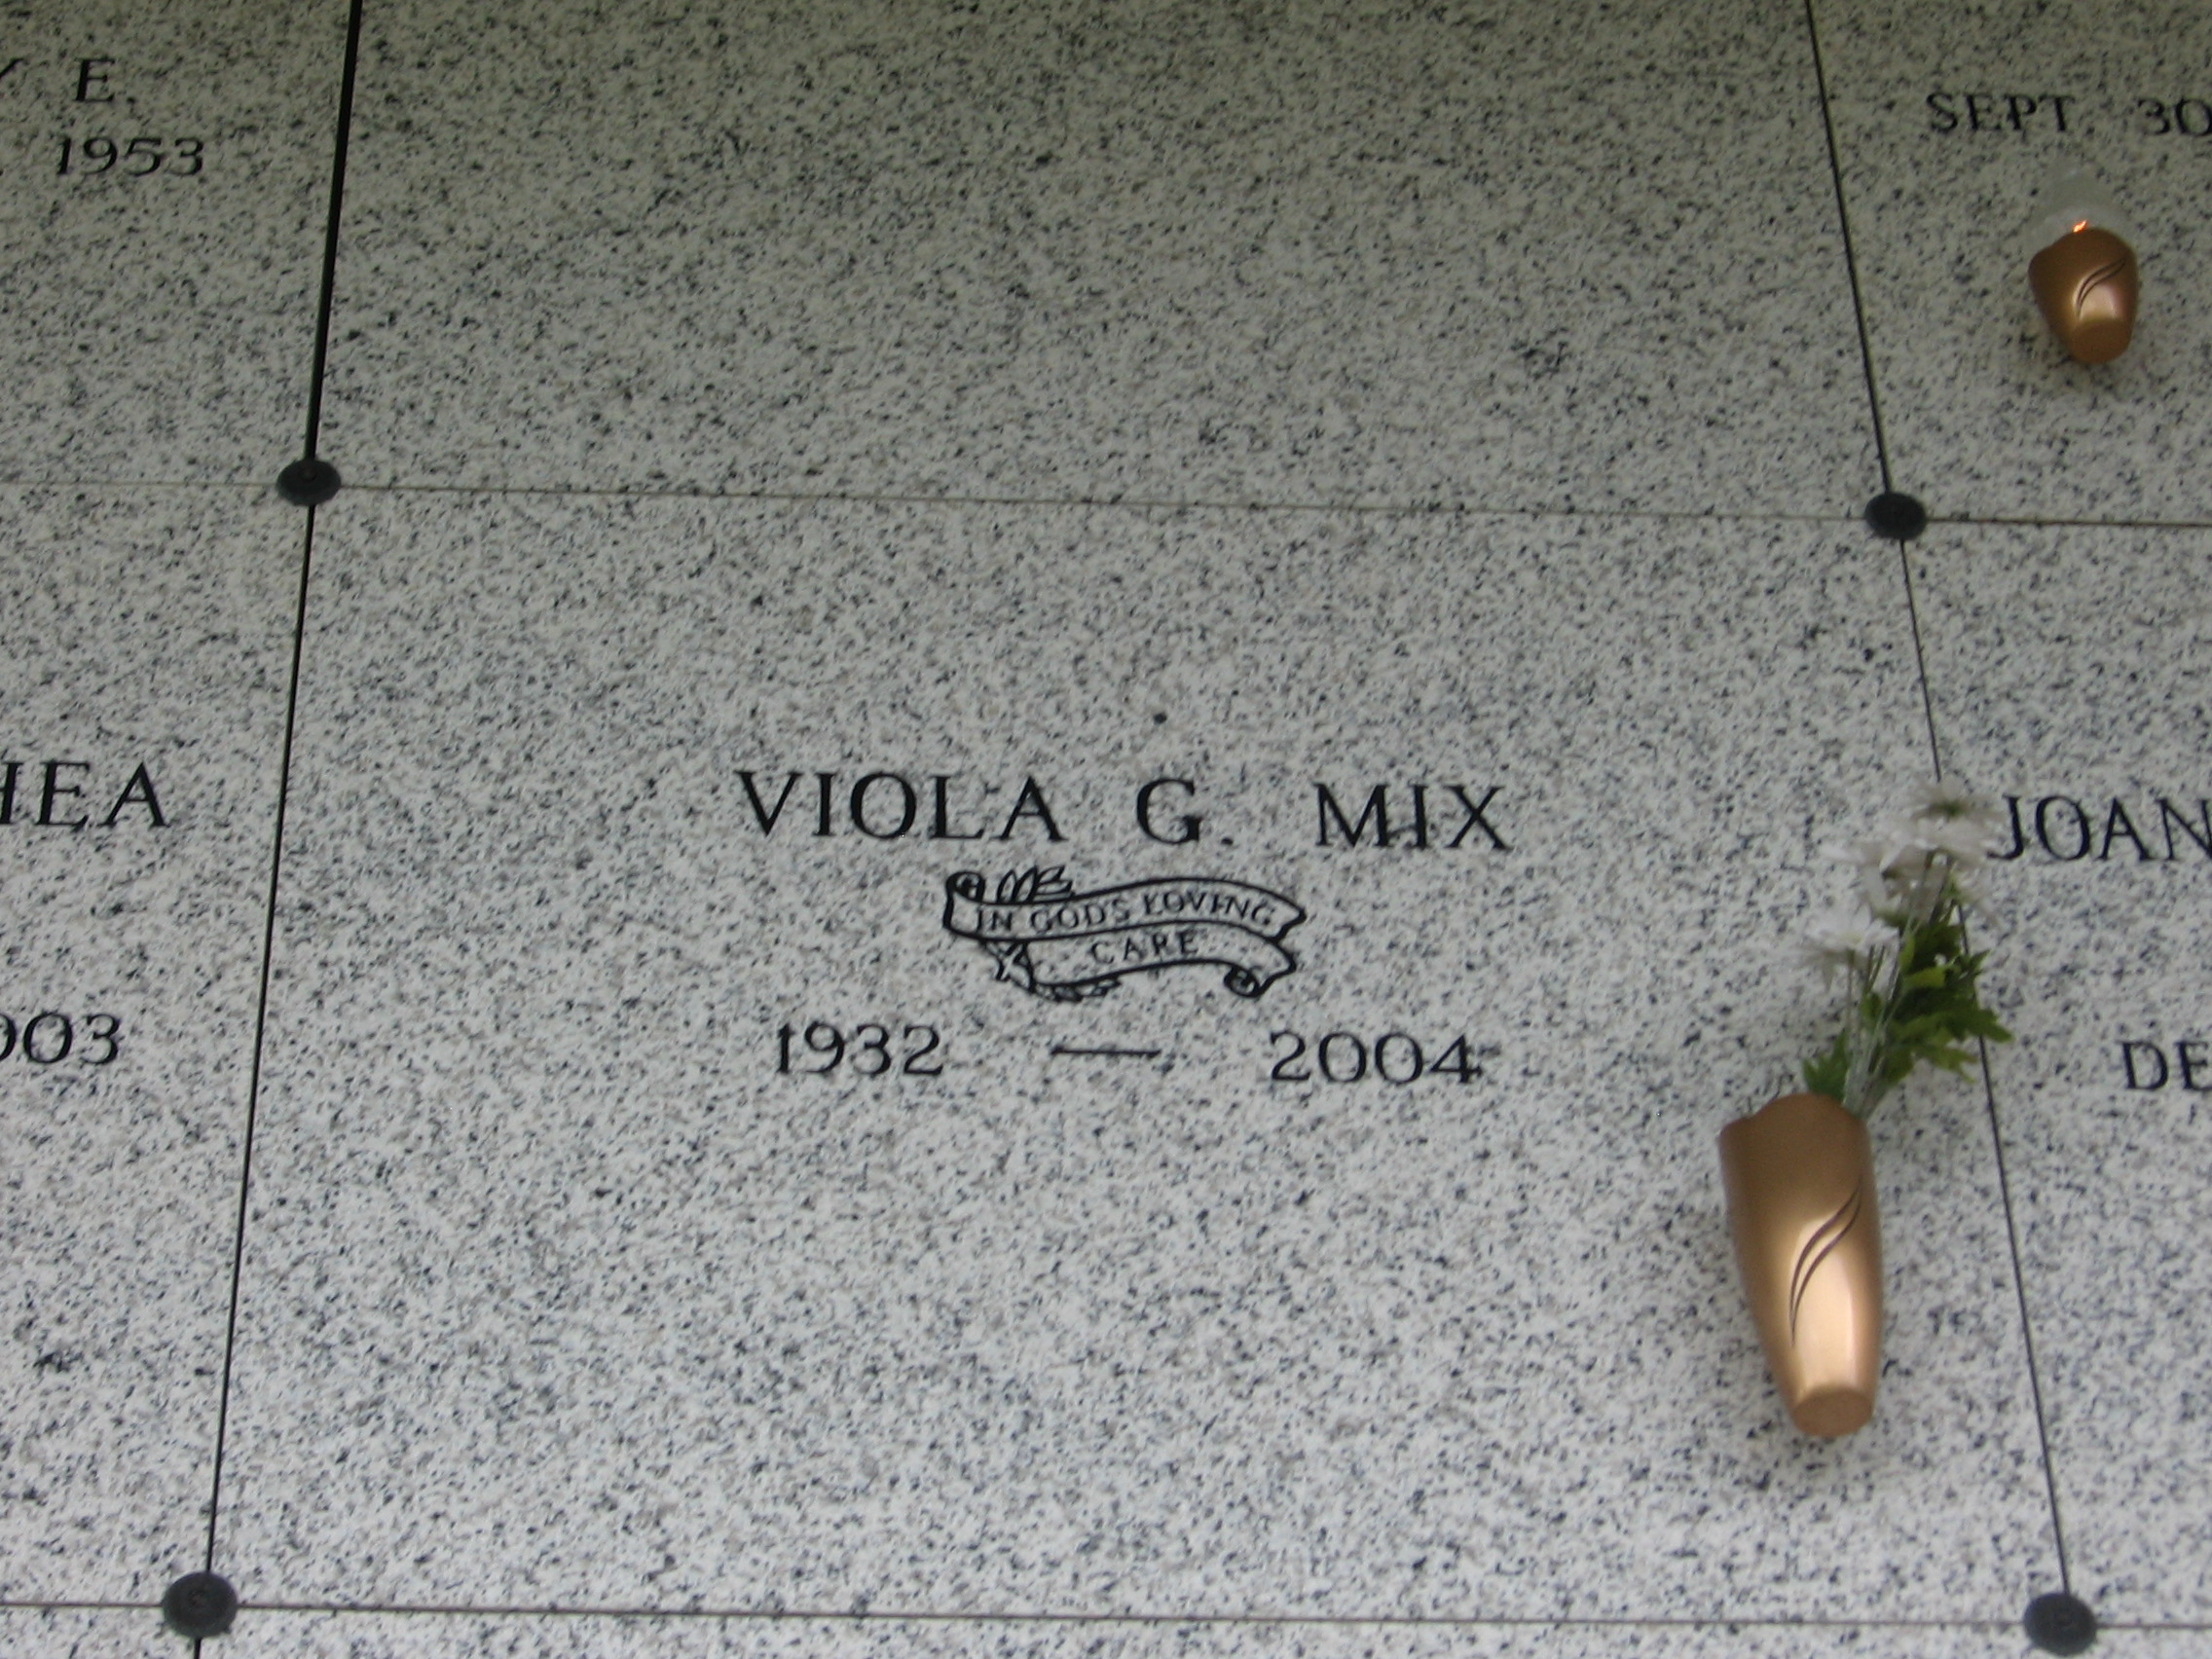 Viola G Mix